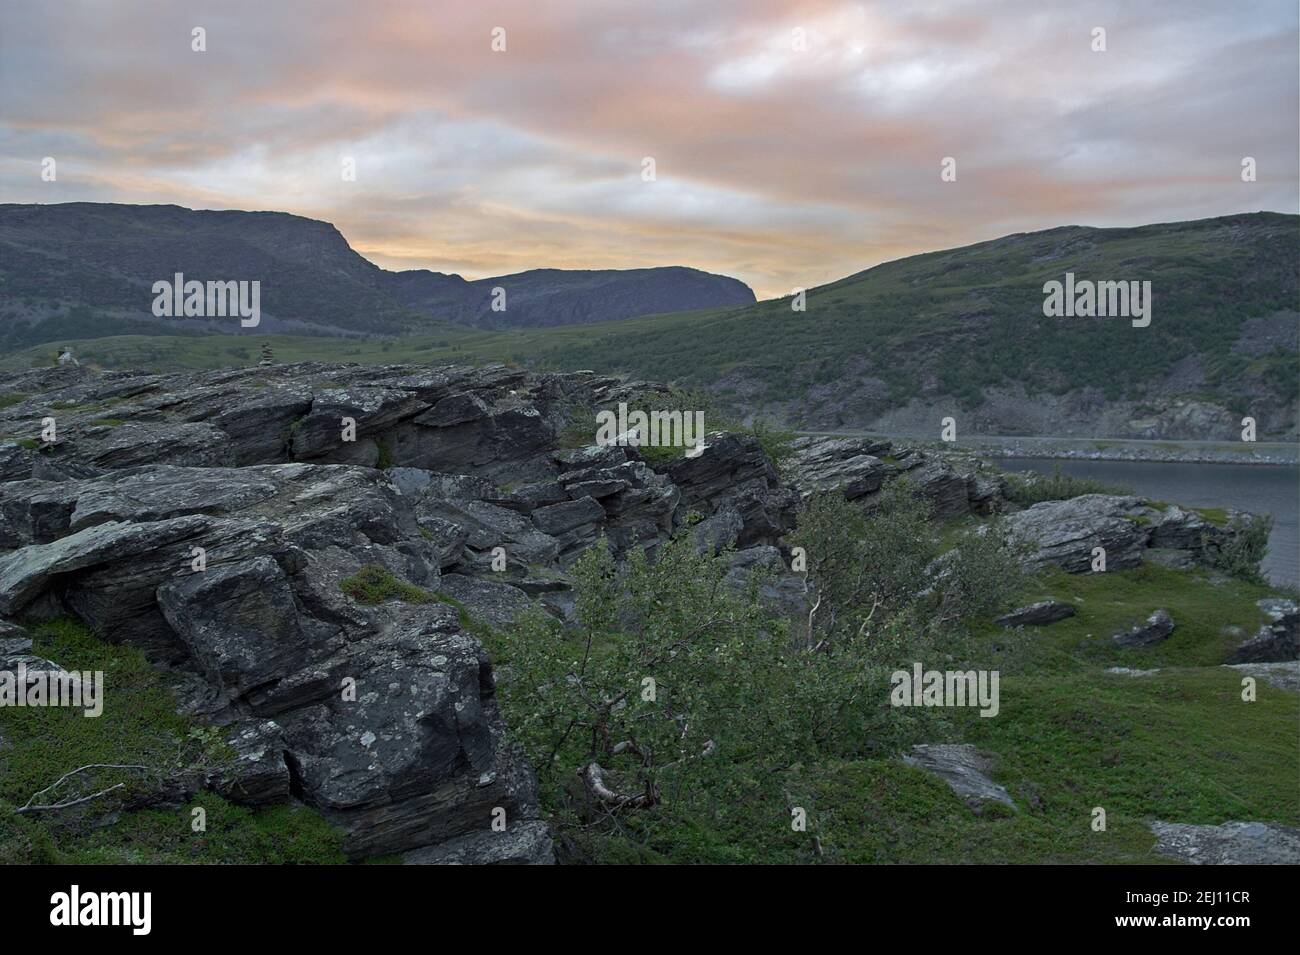 Norvegia, Norvegia; le montagne e il mare sono il tipico paesaggio aspro della Norvegia settentrionale oltre il Circolo polare Artico. Skaliste Góry, skały Foto Stock